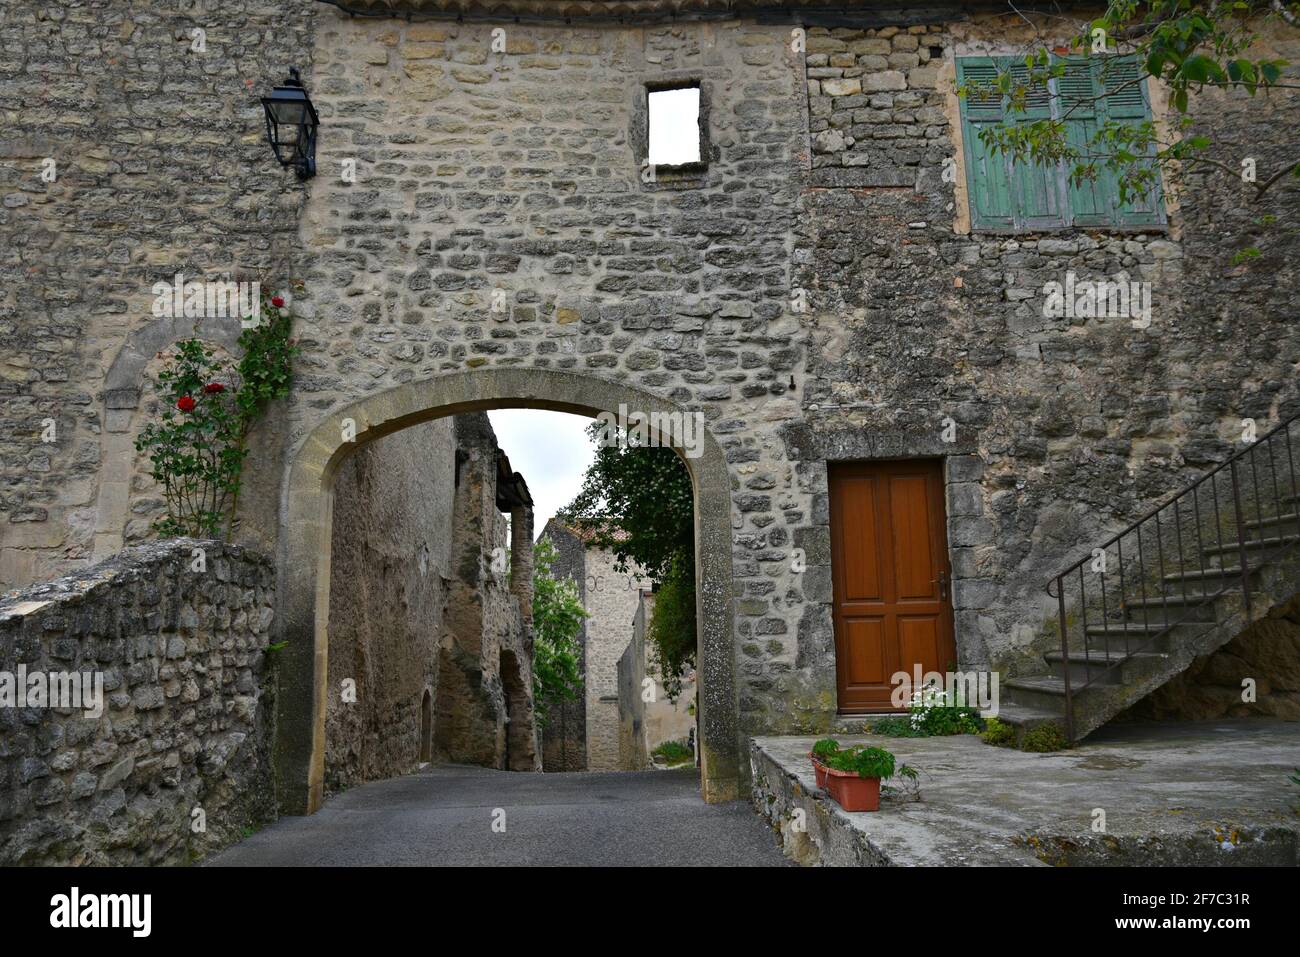 Landscape with typical Renaissance Provençal architecture in the picturesque village of Grambois, Provence-Alpes-Côte d'Azur, Vaucluse, France. Stock Photo